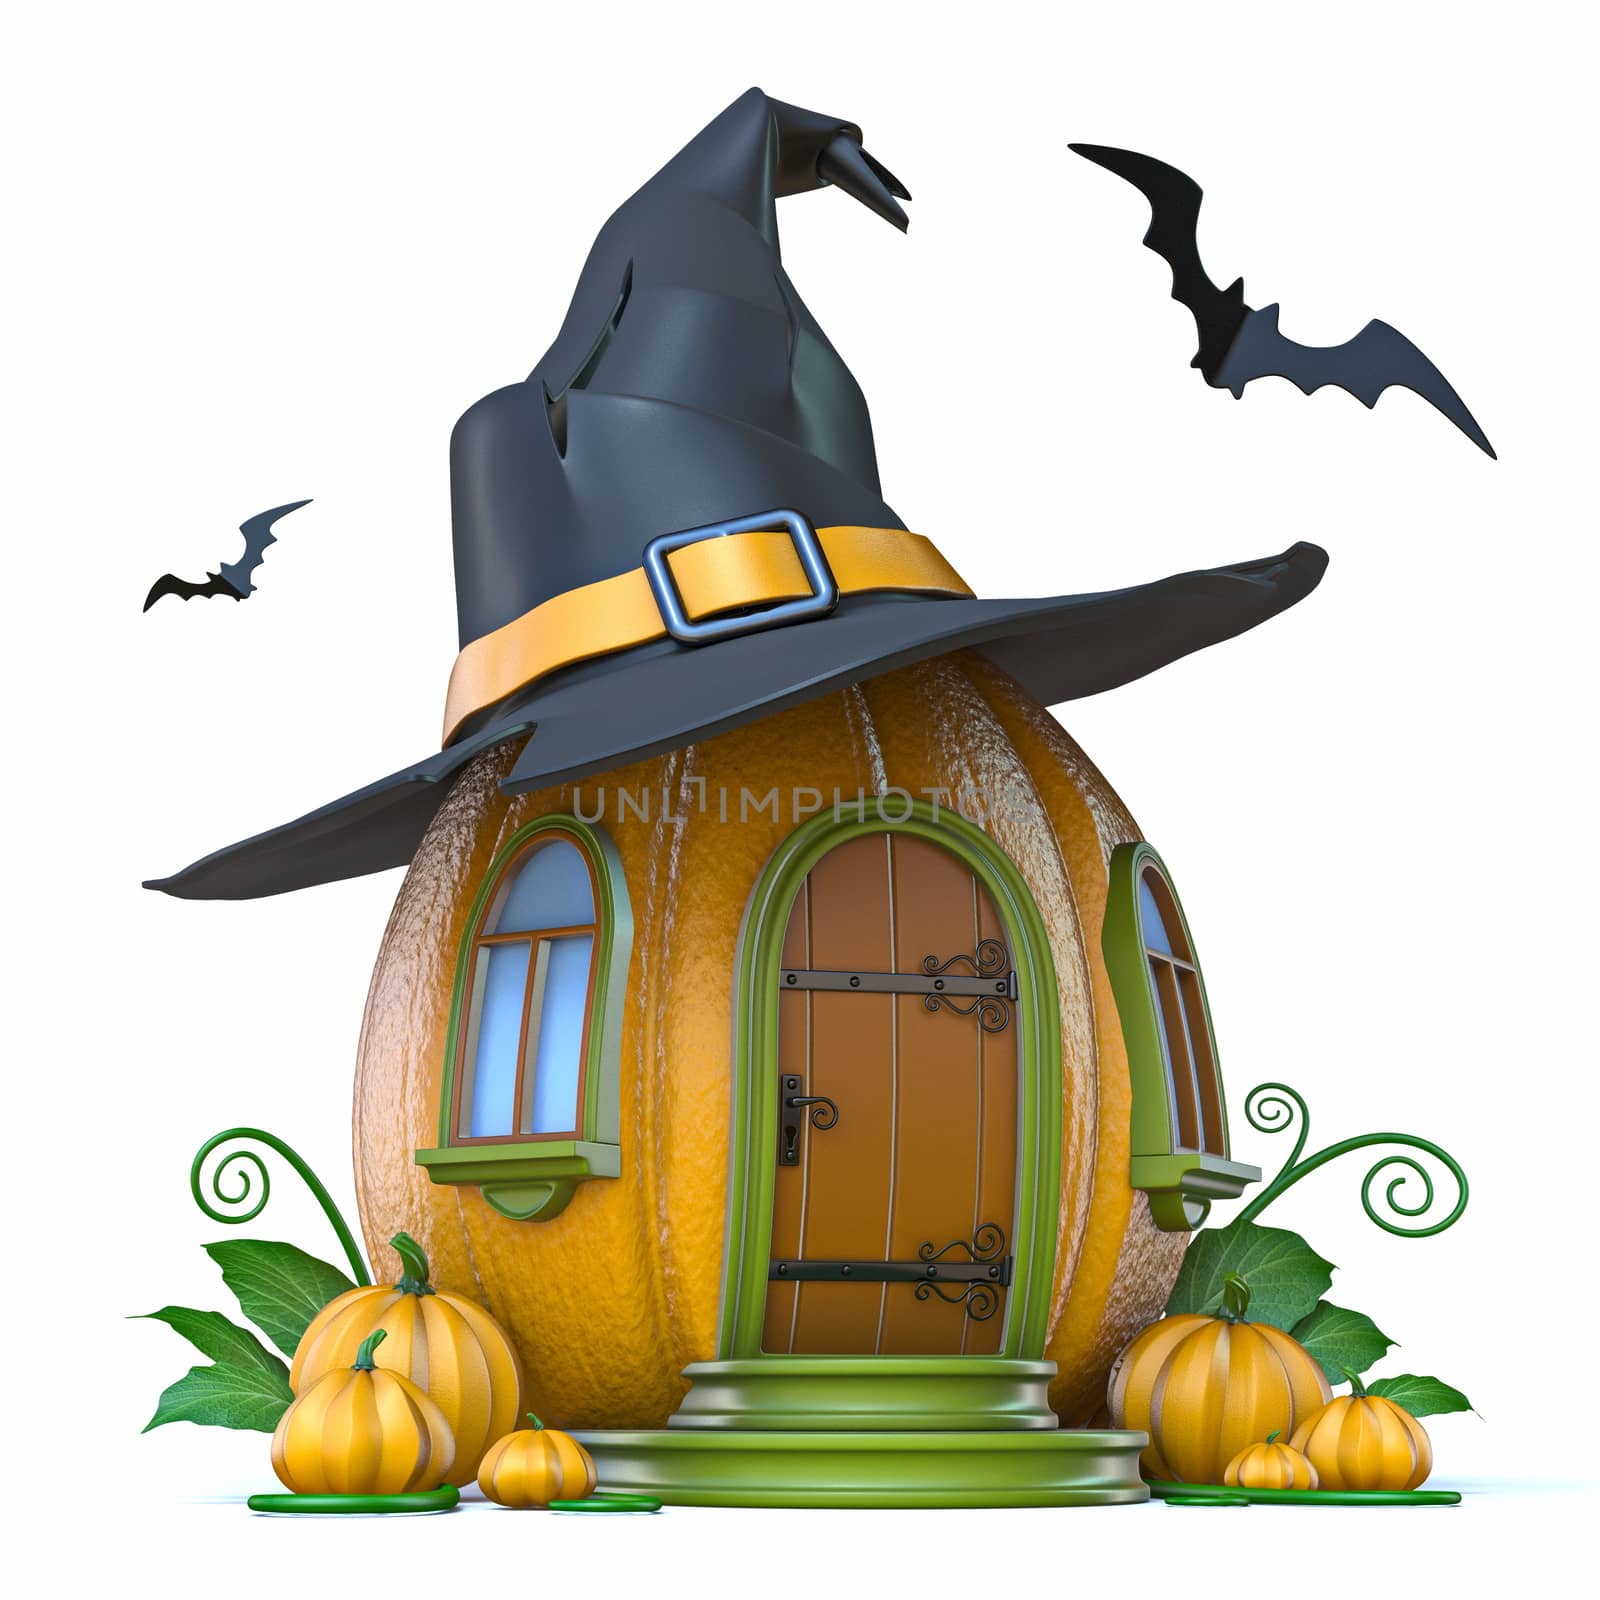 Halloween pumpkin house 3D by djmilic